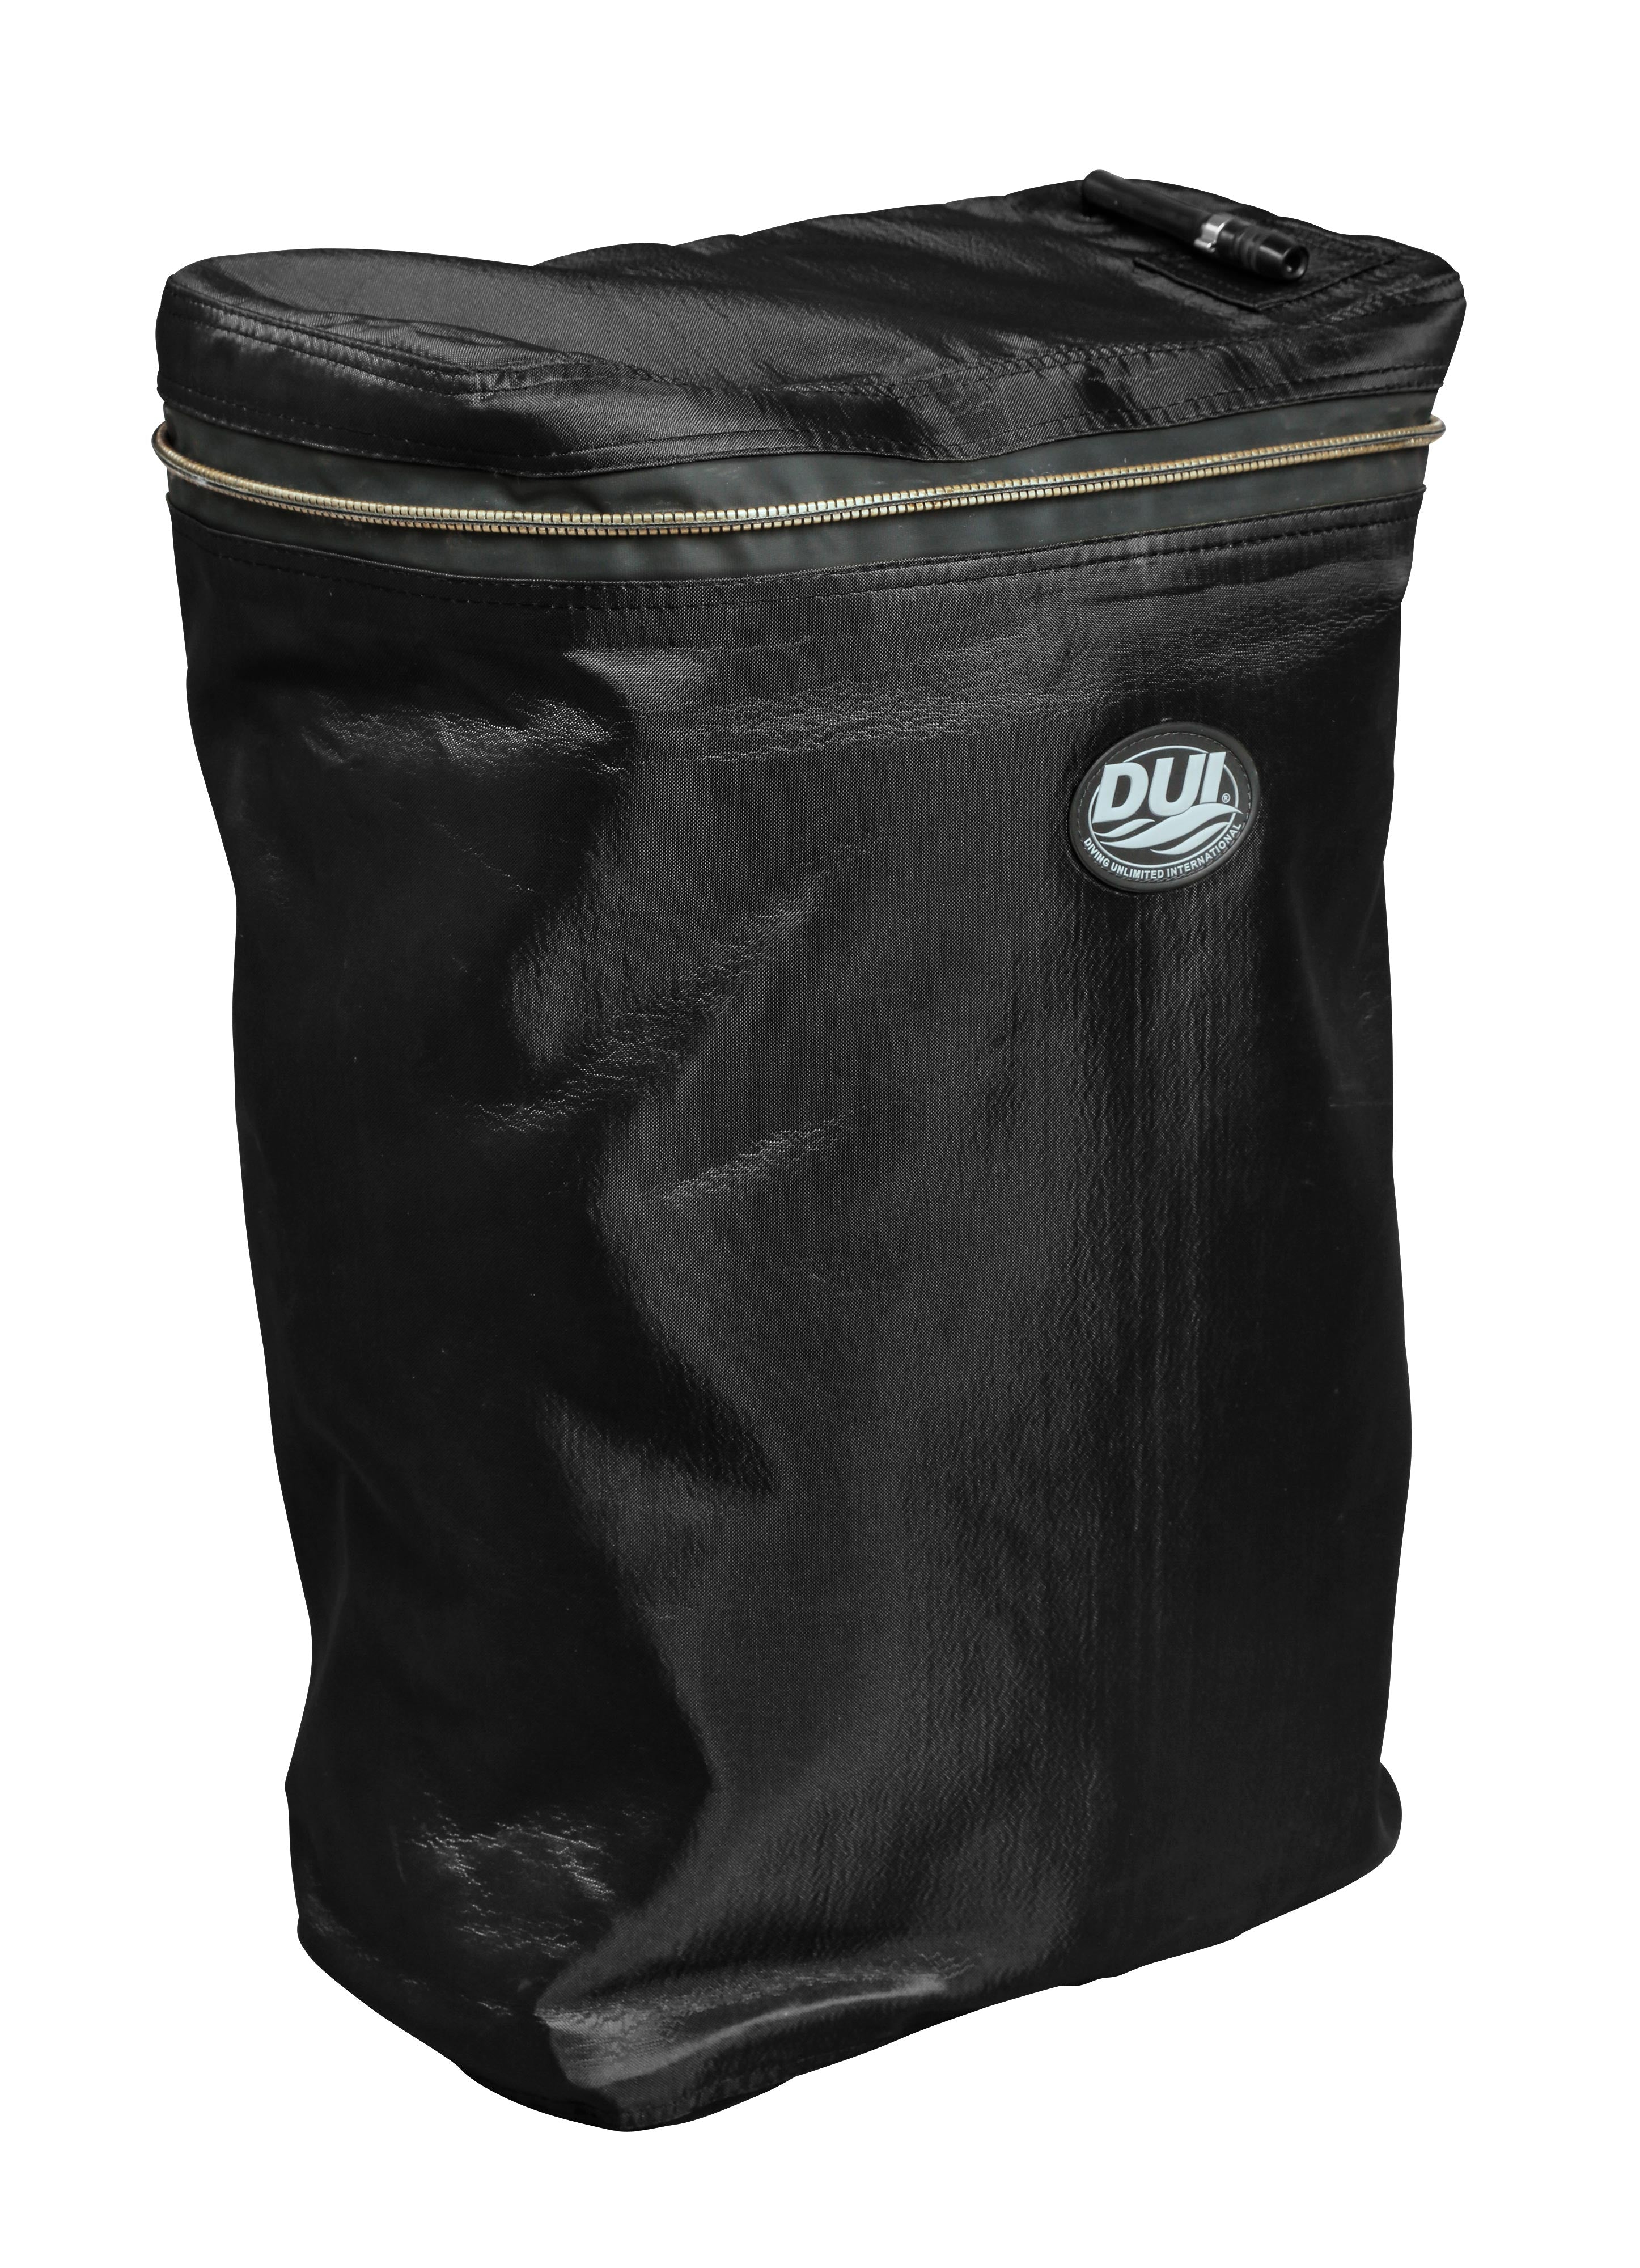 TLS Heavy Duty Rucksack Liner, Waterproof Bag - Olive Drab - Large or Medium